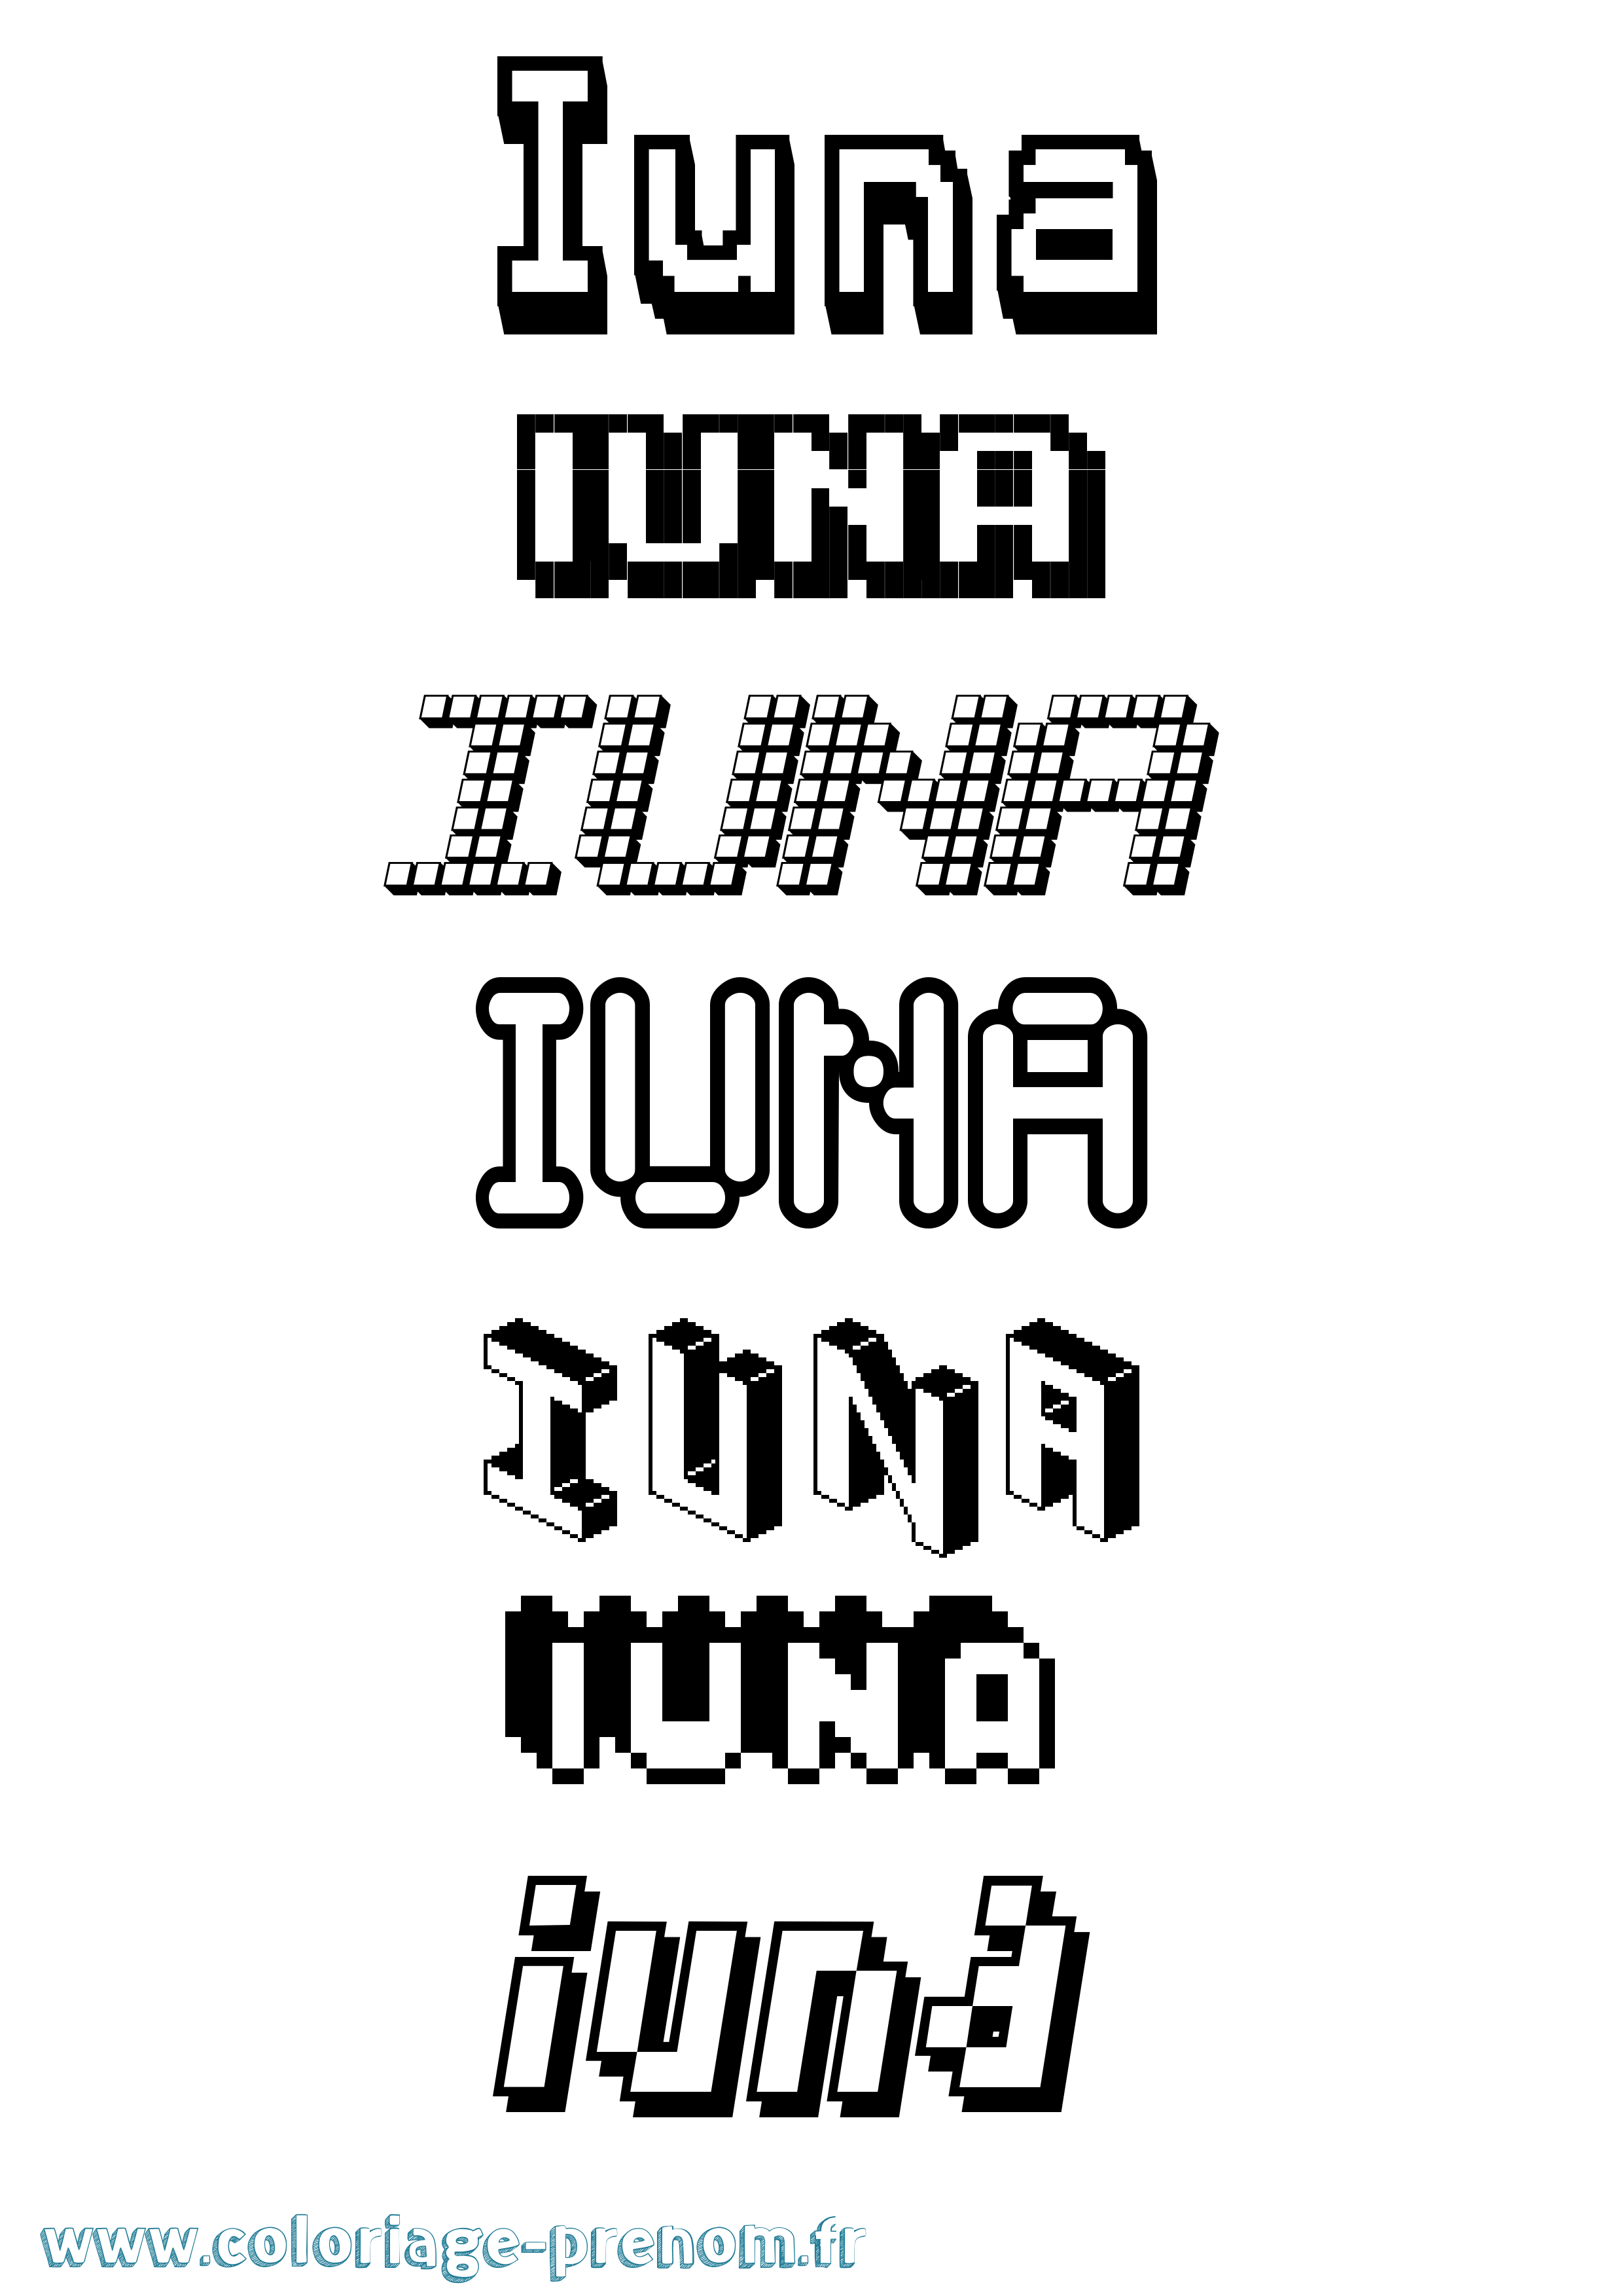 Coloriage prénom Iuna Pixel